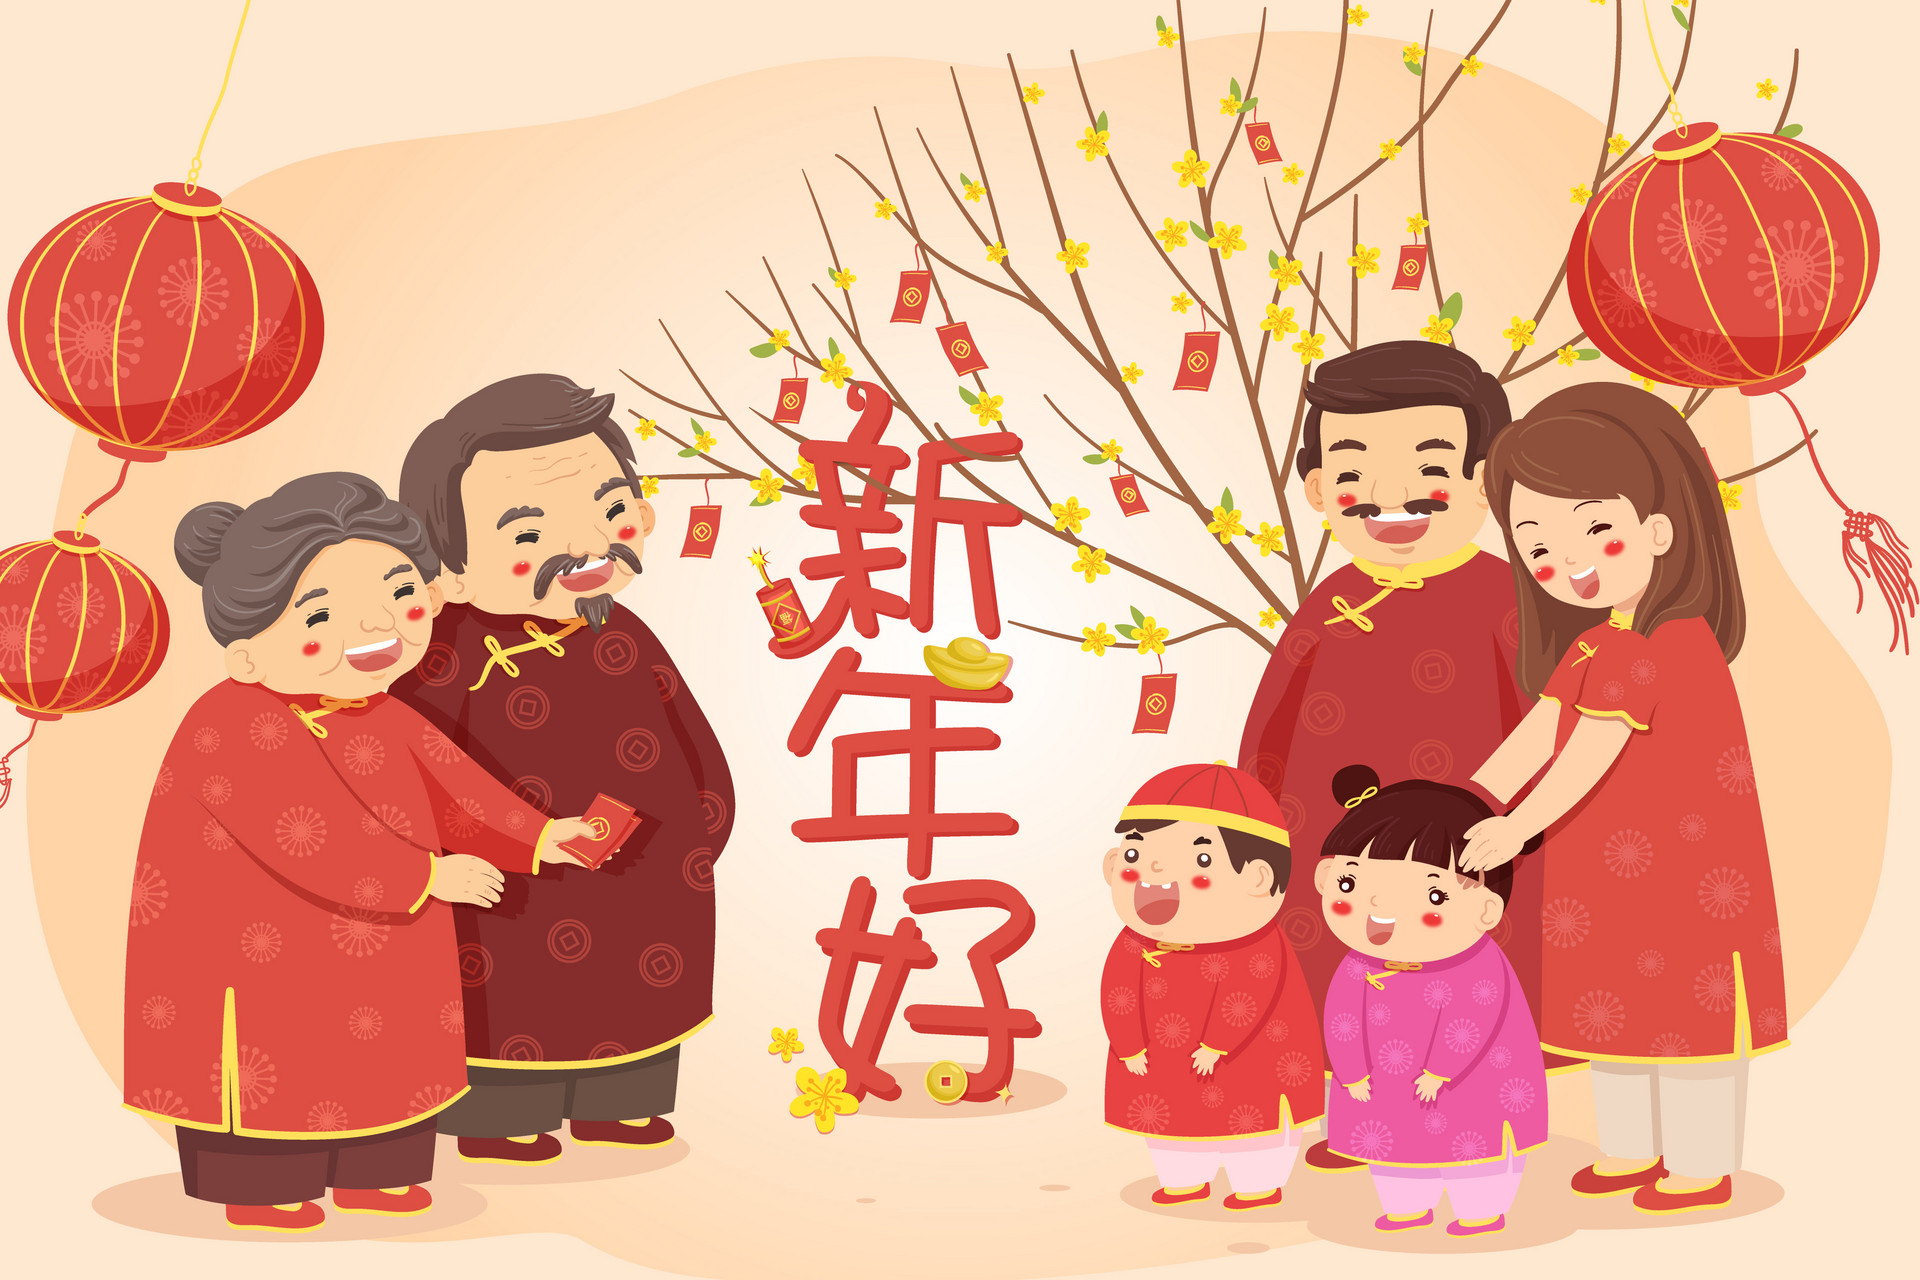 除夕春节来临，过年的来历、传说、习俗和禁忌，别忘了讲给孩子听